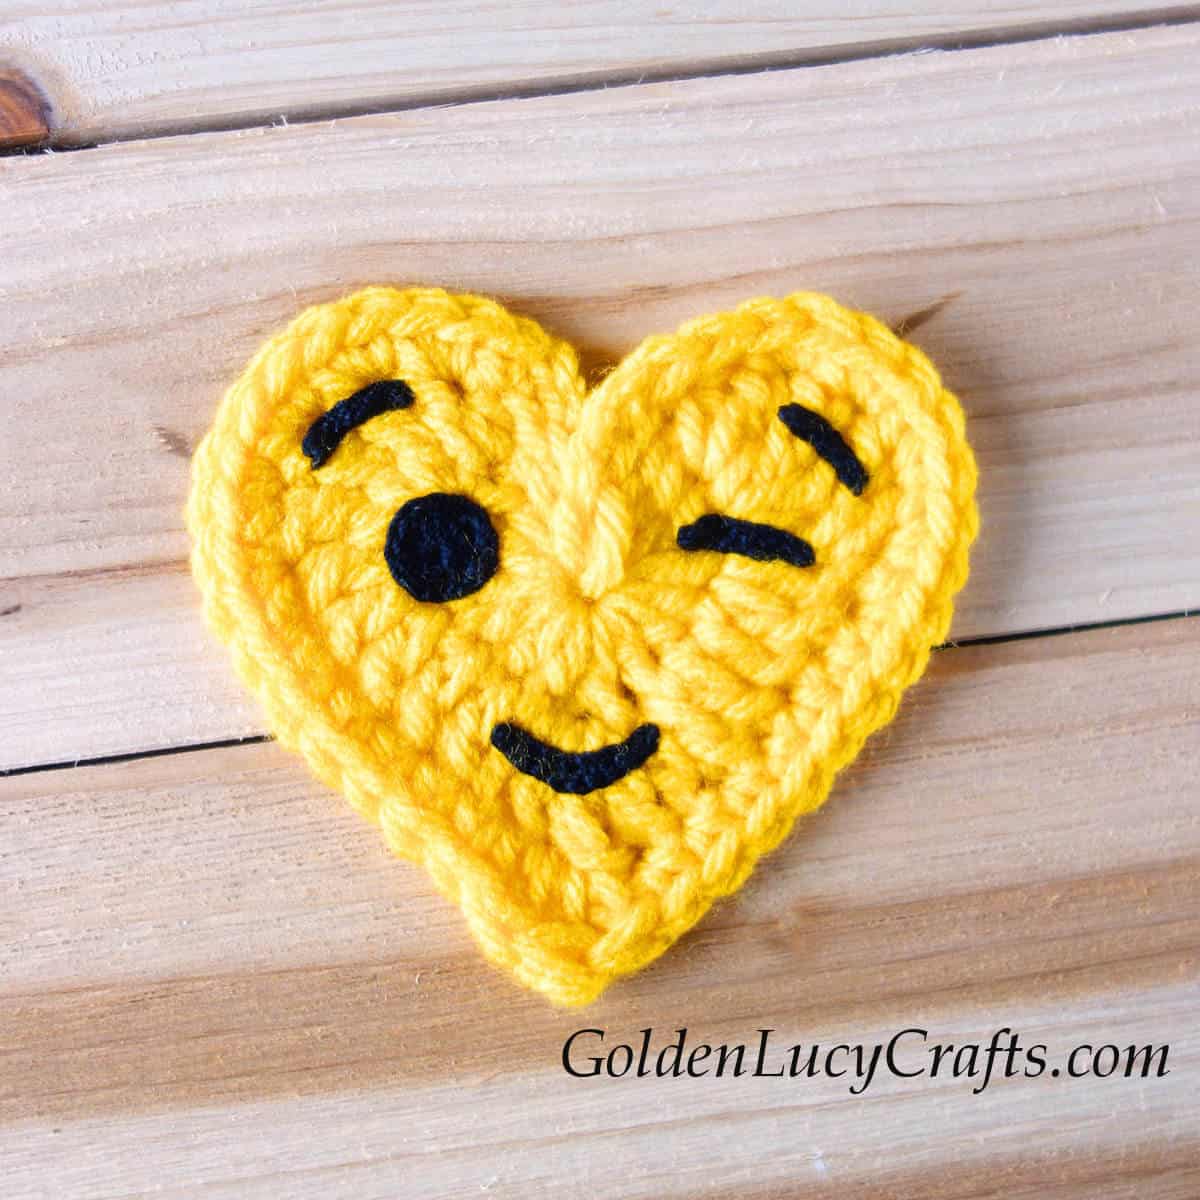 Crochet heart-shaped emoji winking face.